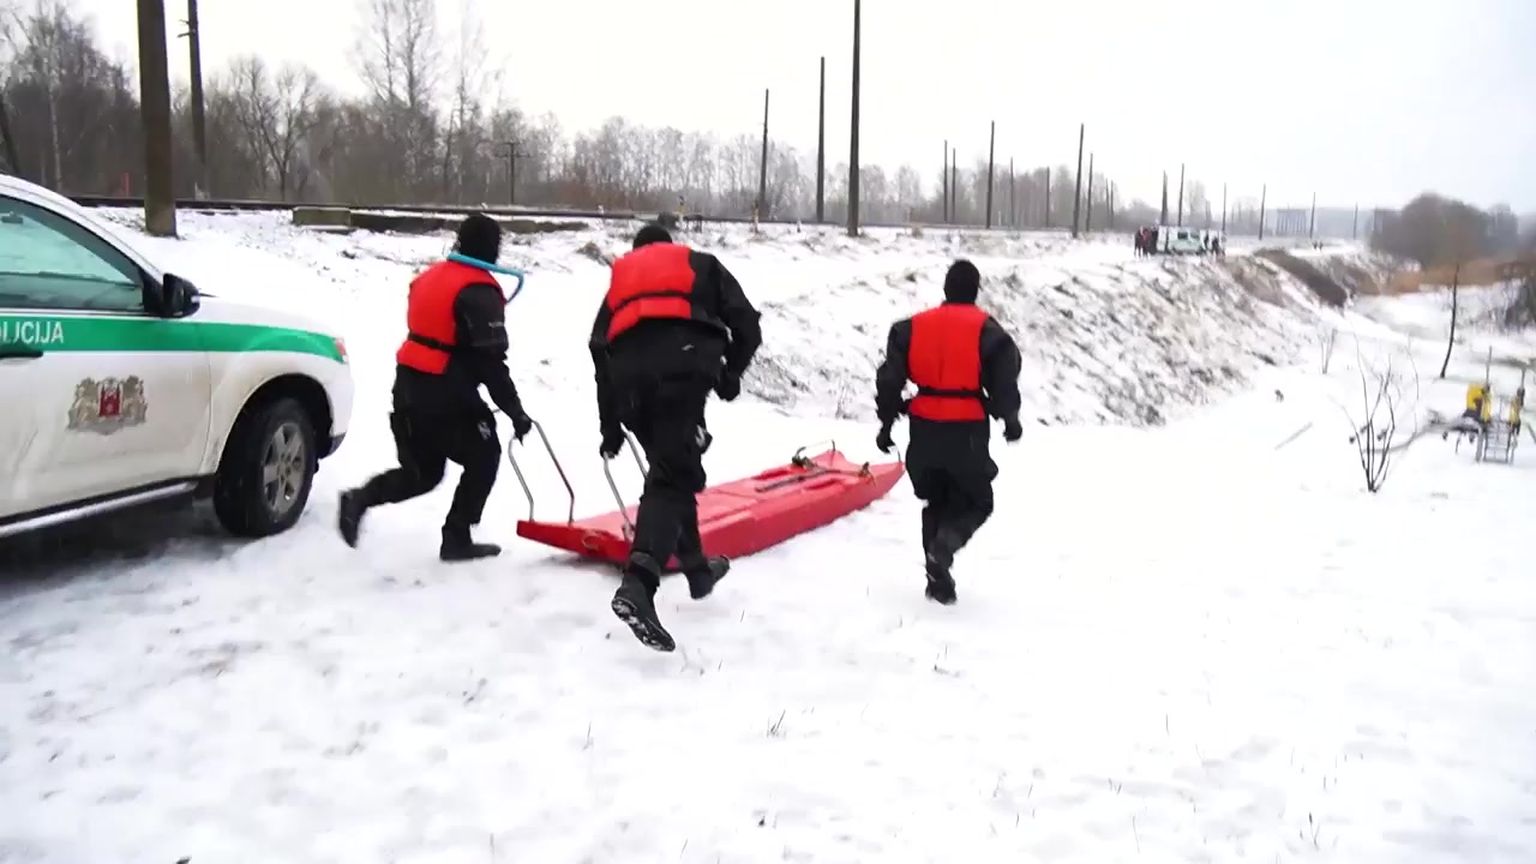 RPP organizē apmācības nolūkā stiprināt darbinieku glābšanas prasmes ziemas apstākļos